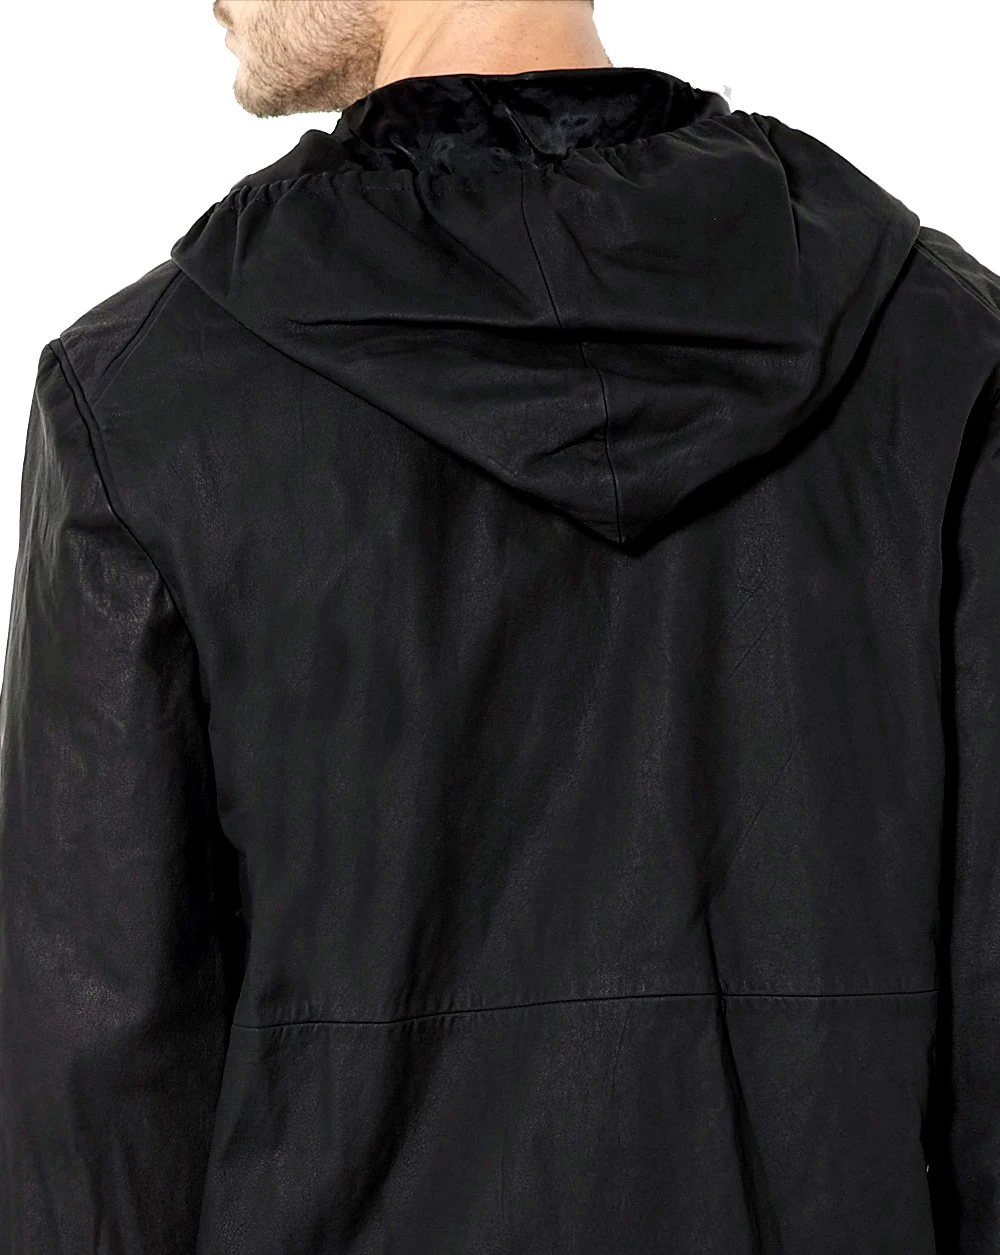 Washed Leather Hooded Jacket